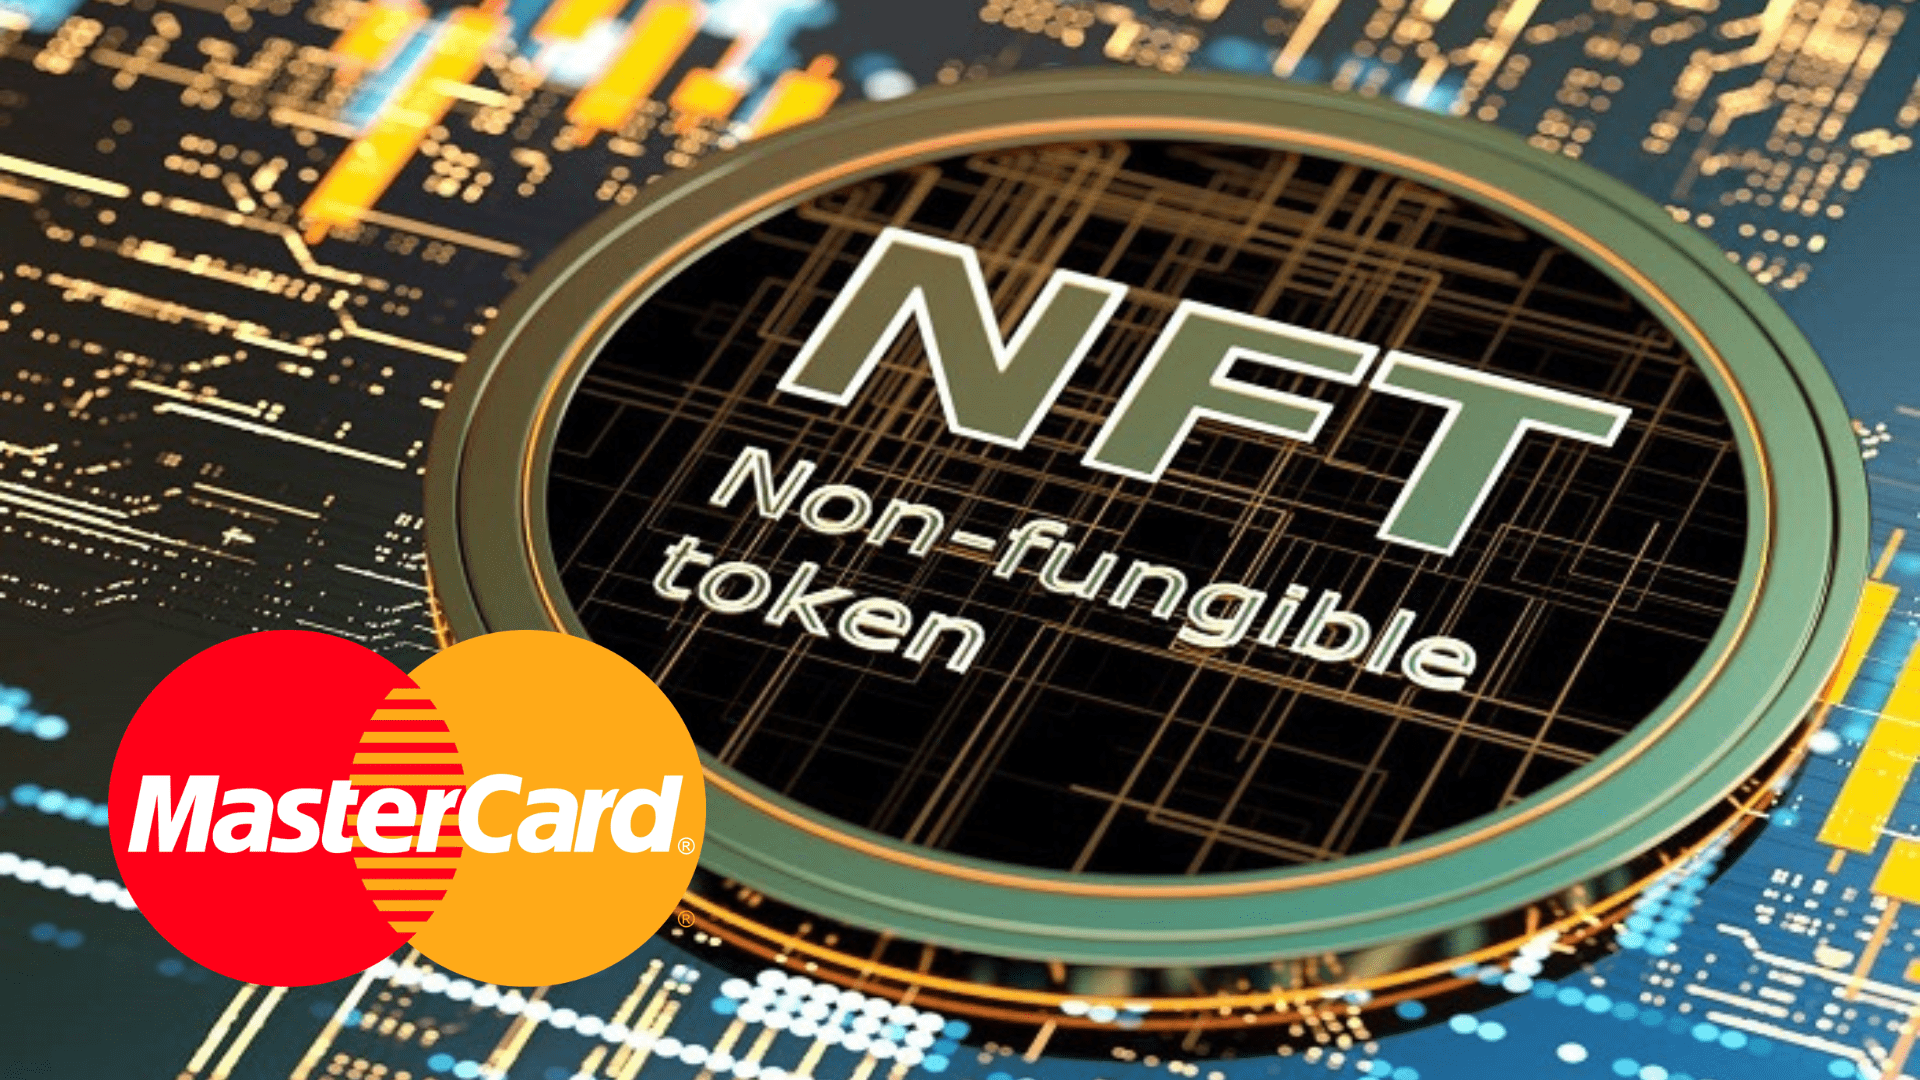  Mastercard pradėjo partnerystę su keliomis platformomis, dėl NFT pirkimų